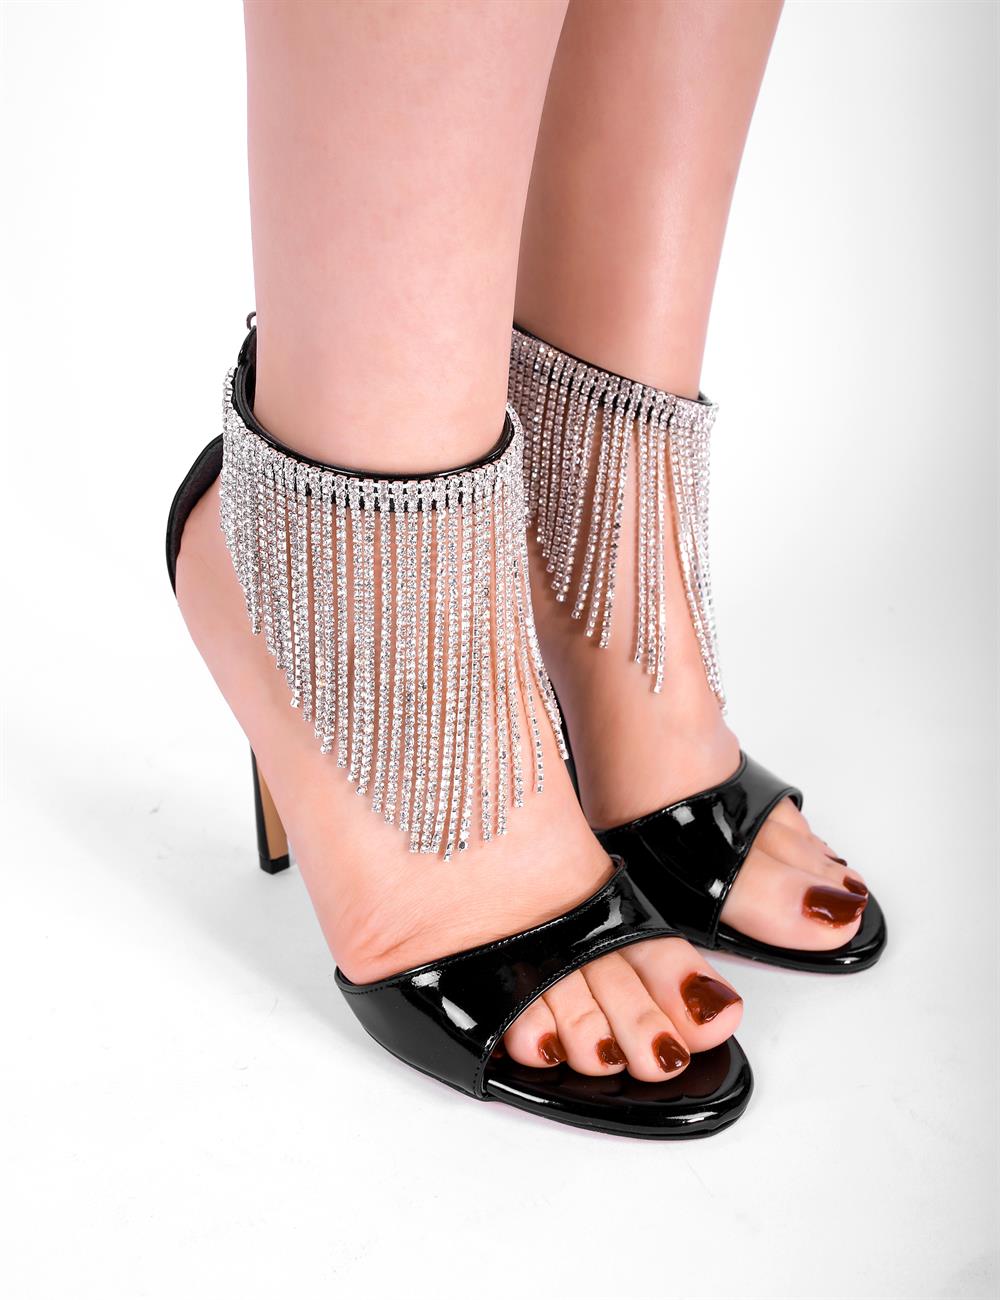 Fenny Kristal Taşlı Topuklu Ayakkabı Siyah - Kadın Ayakkabı